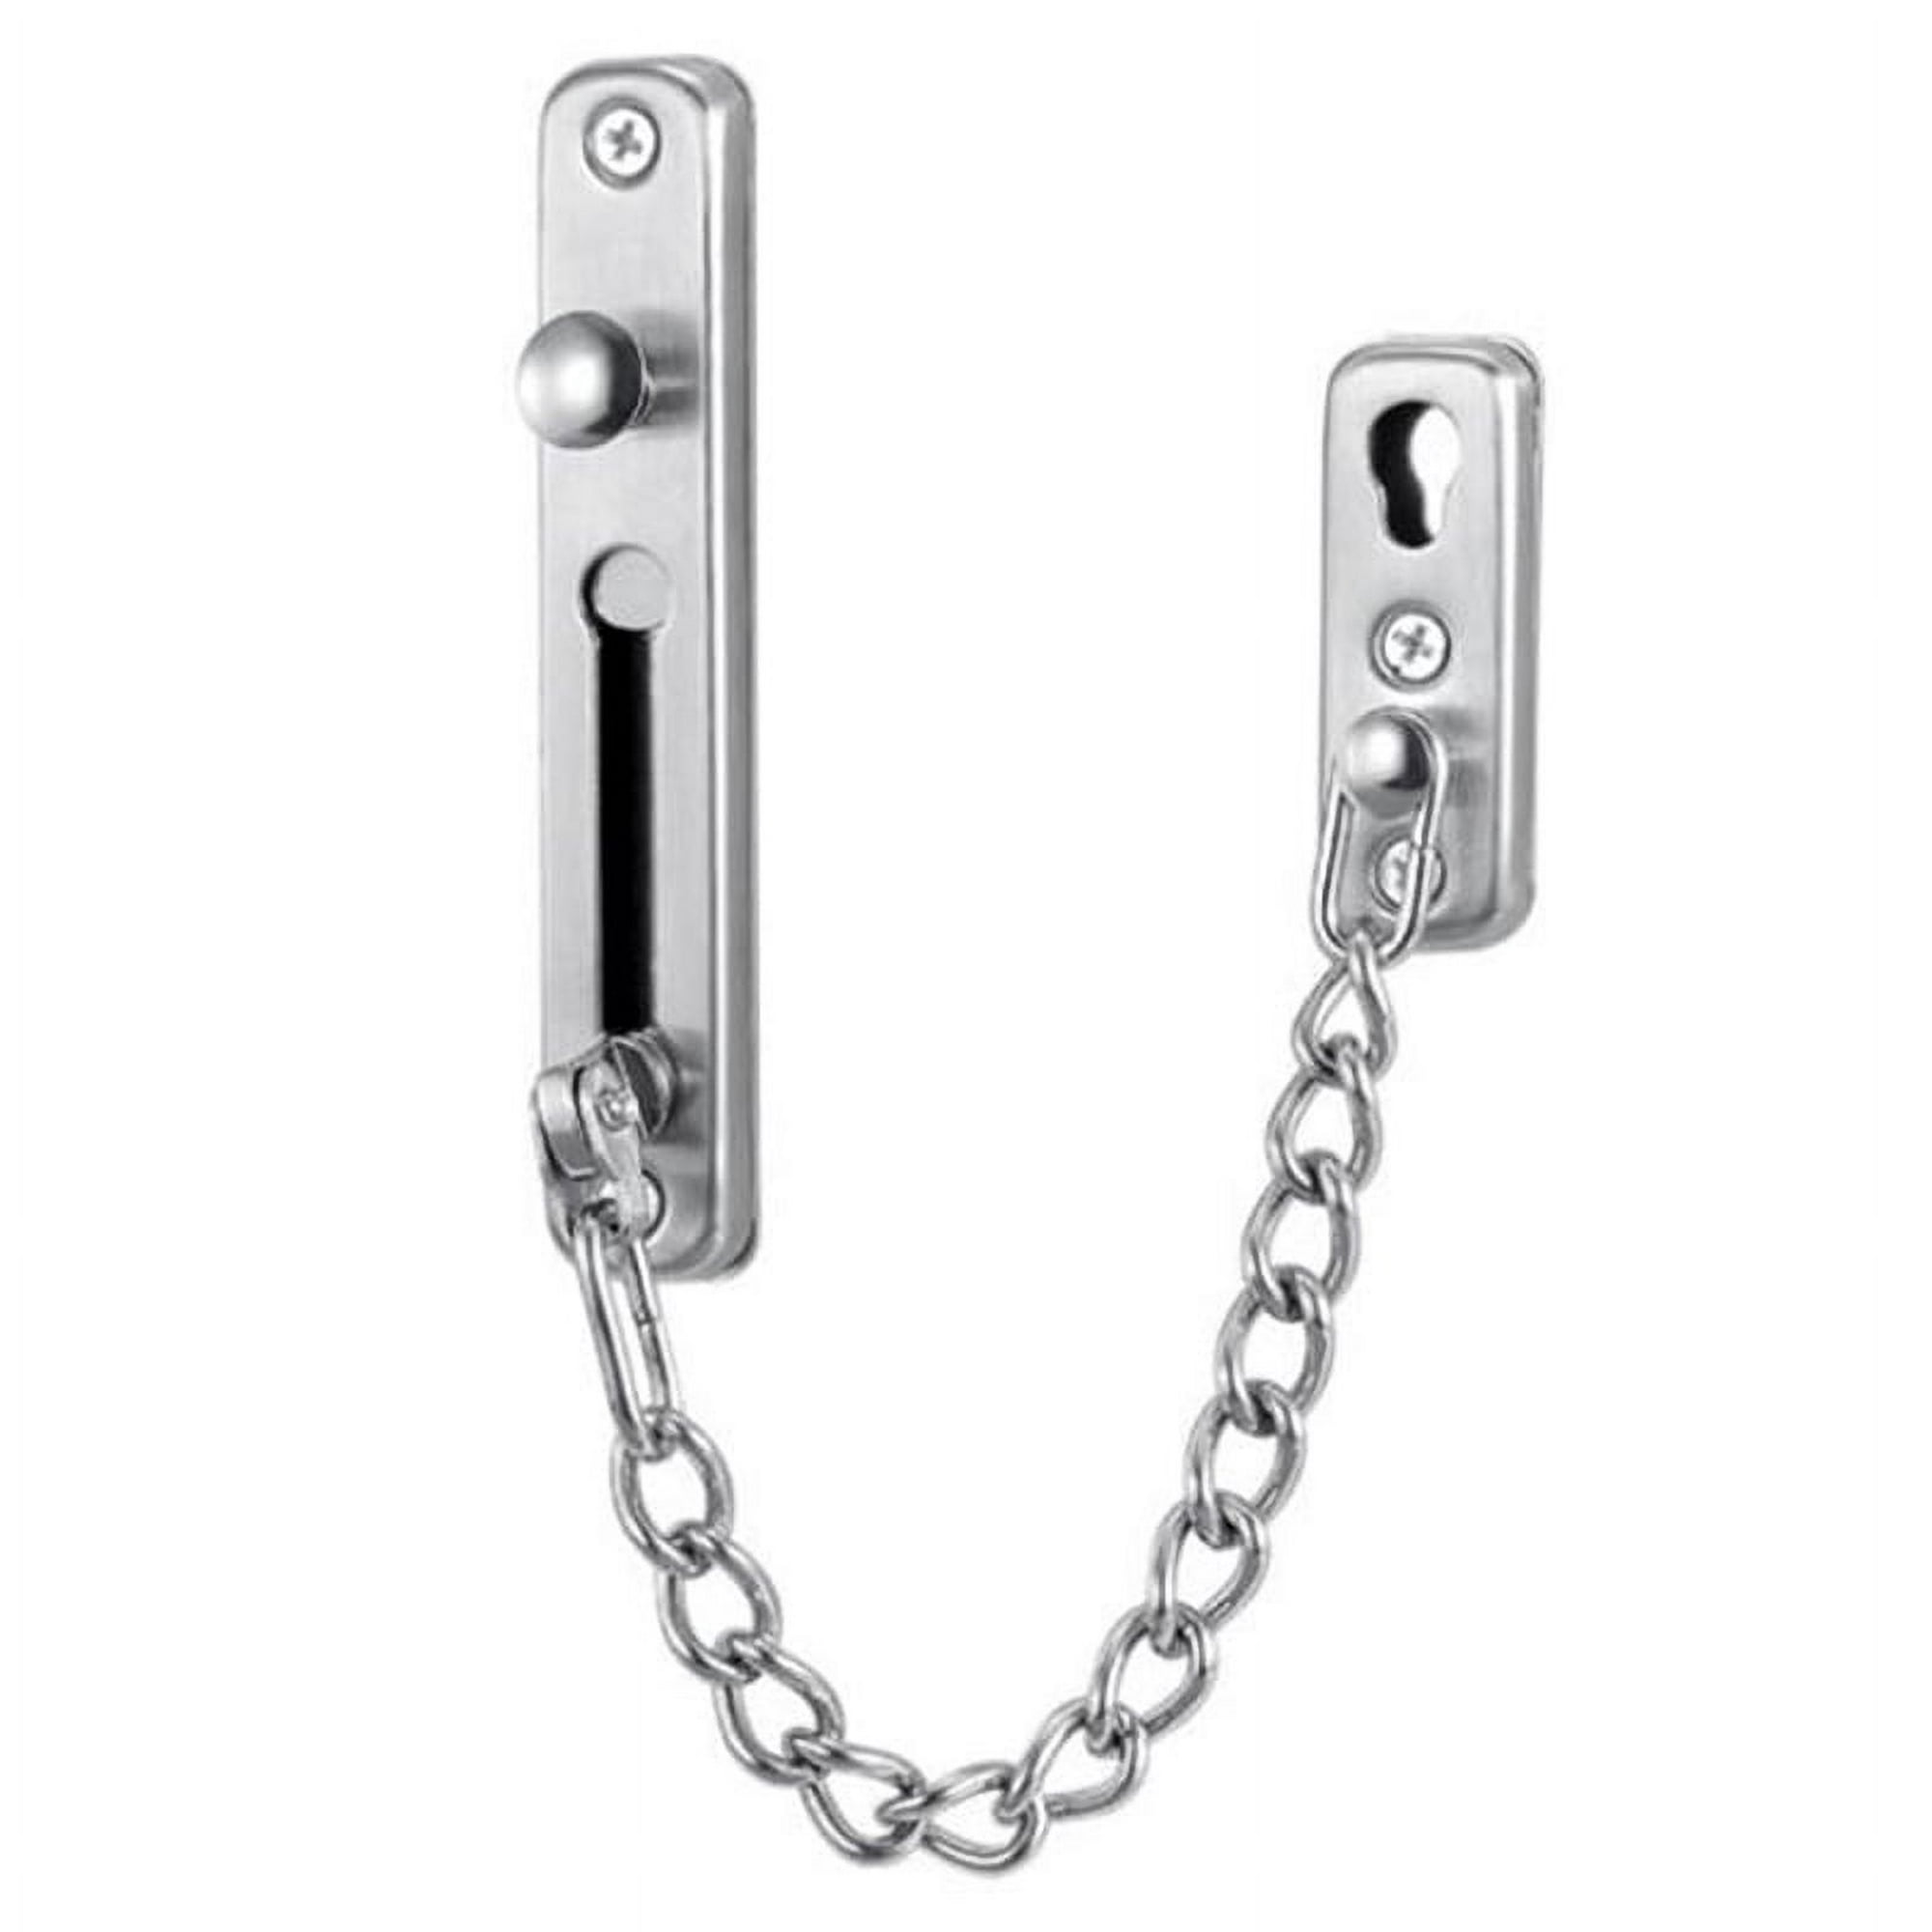 2x Cerradura de cadena de puerta de acero inoxidable para puerta interior